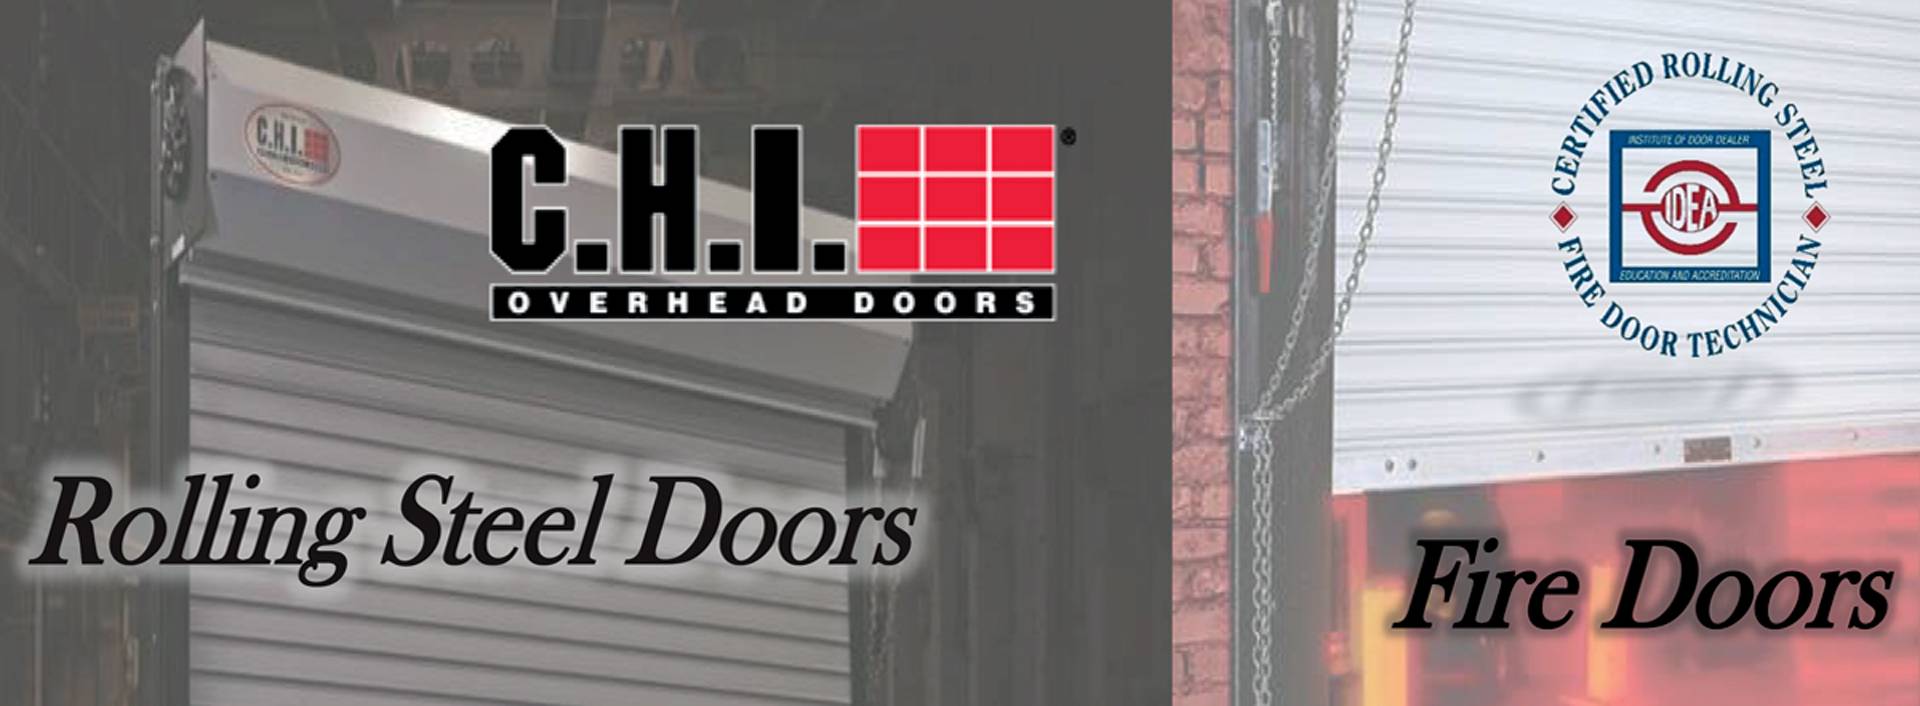 Rolling Steel Doors & Fire Doors